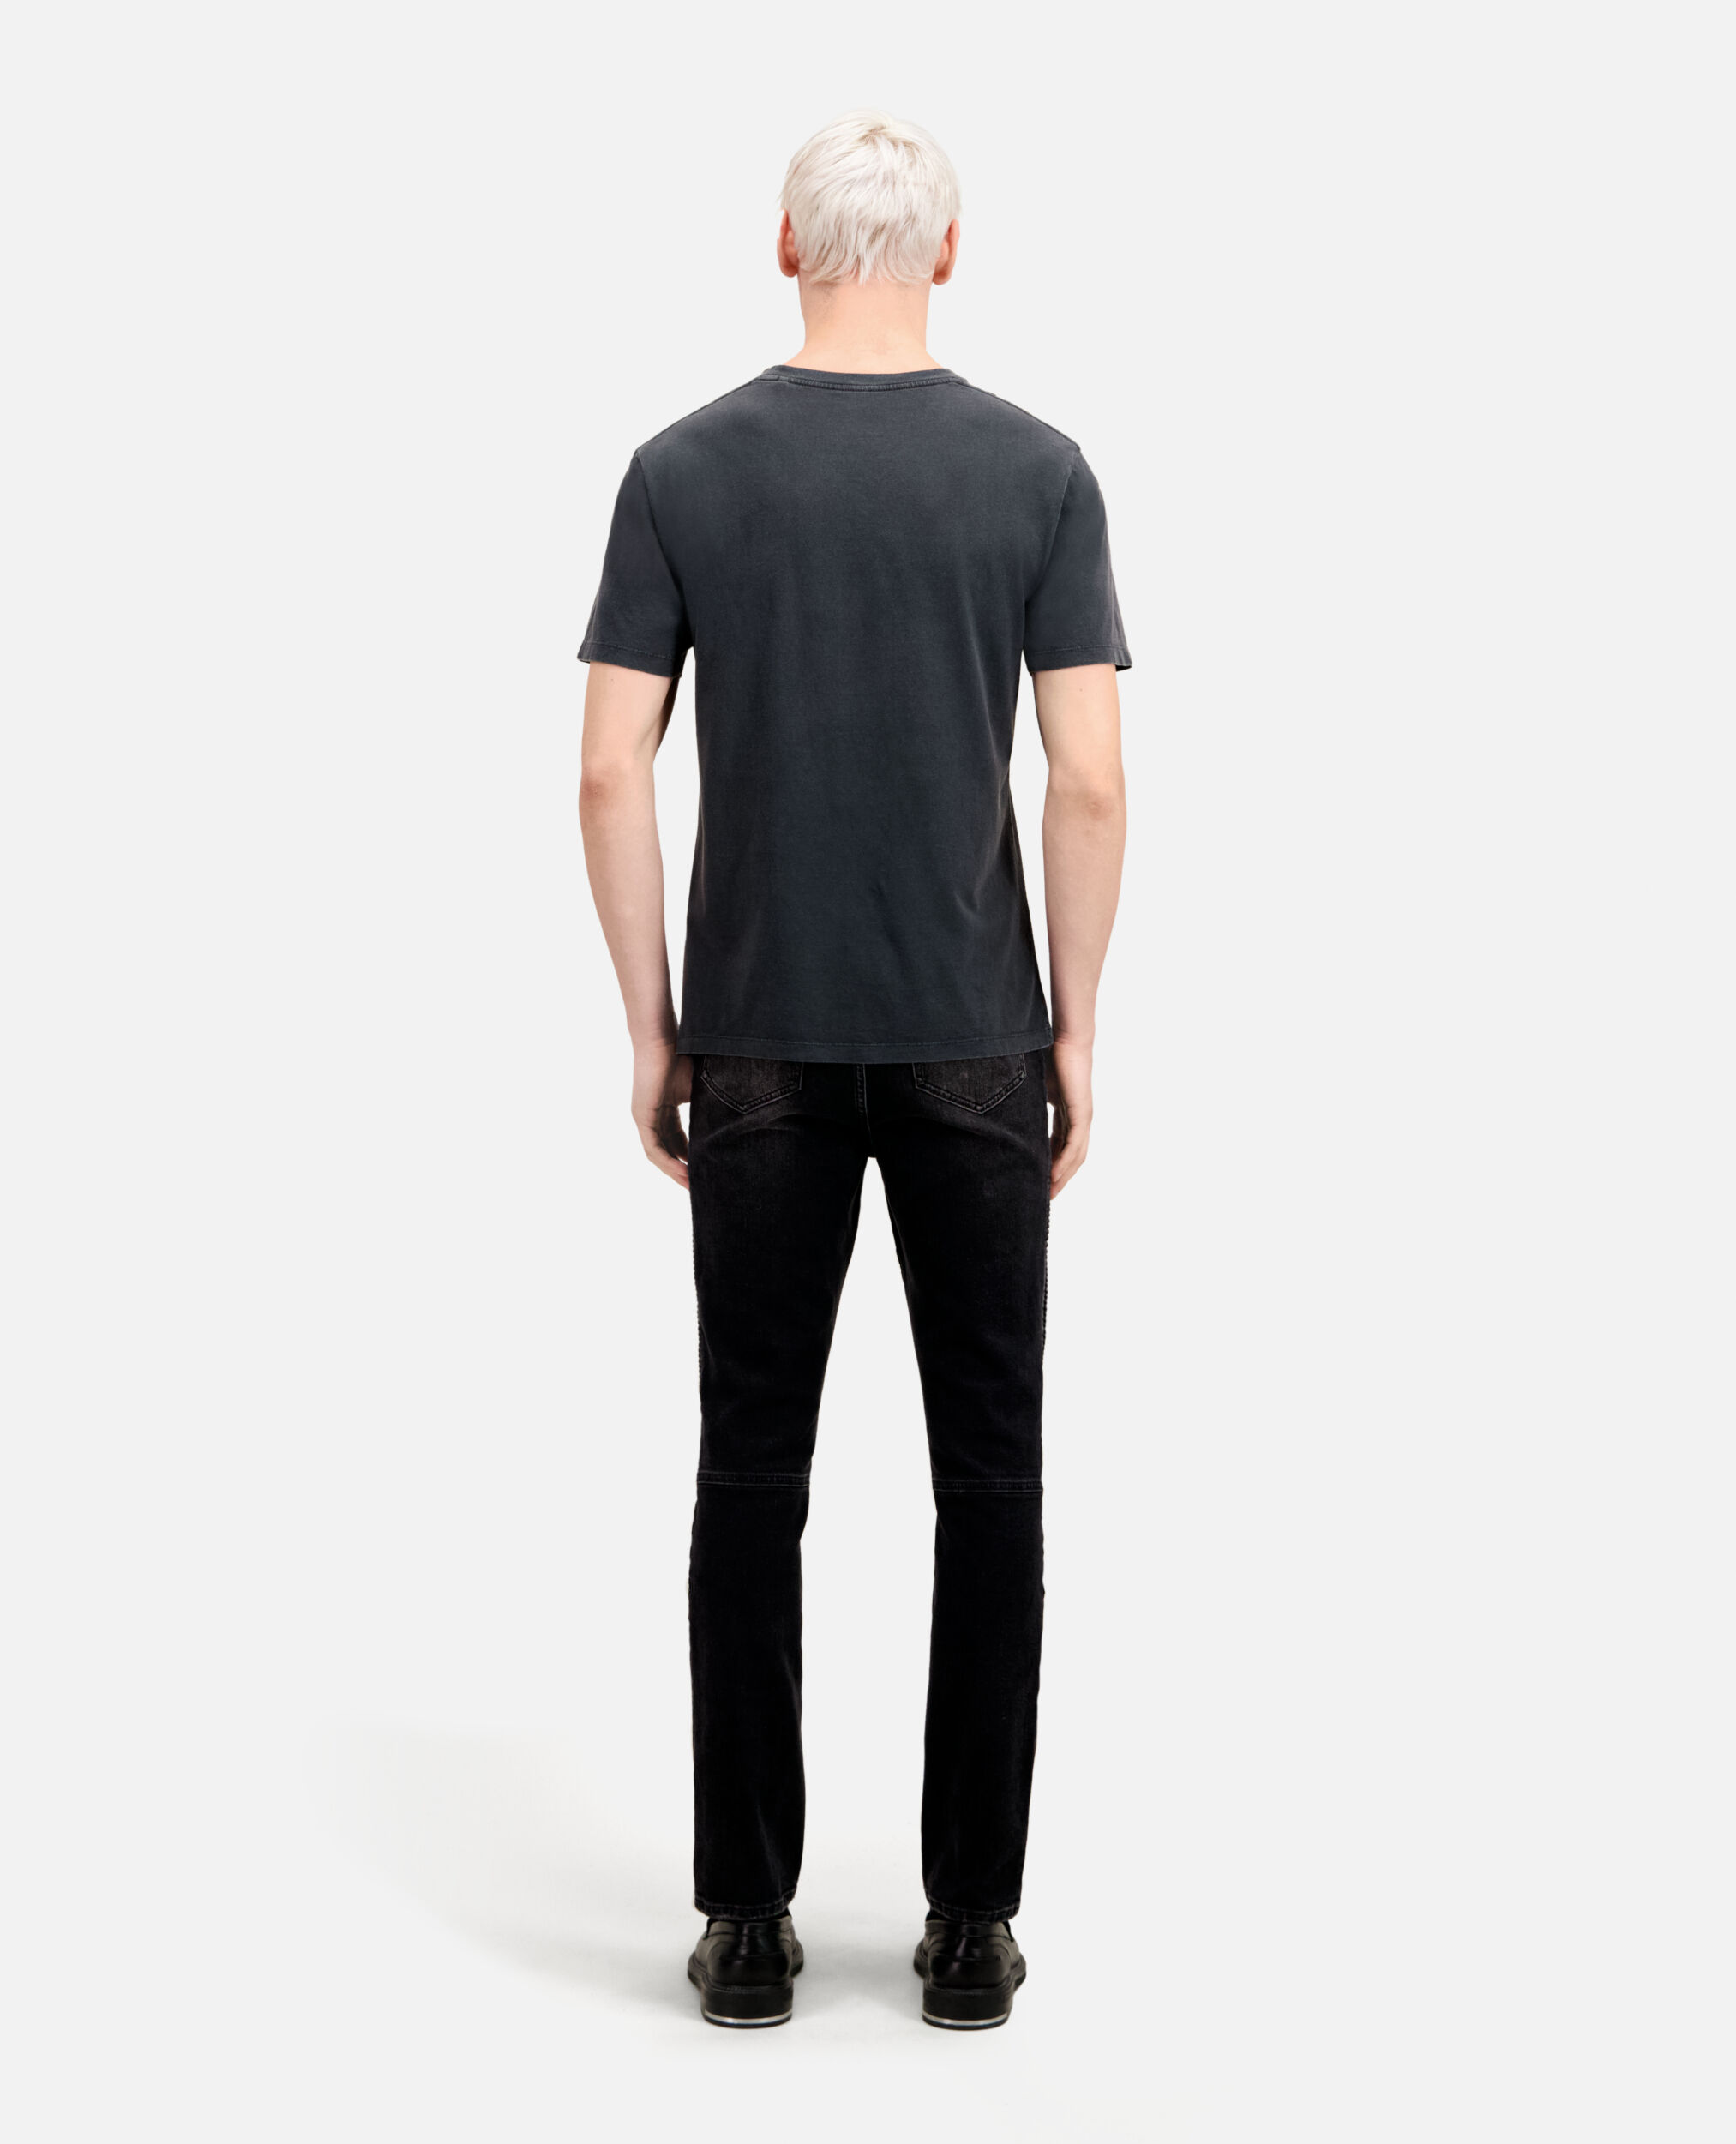 Men's black t-shirt with vintage skull serigraphy, BLACK WASHED, hi-res image number null